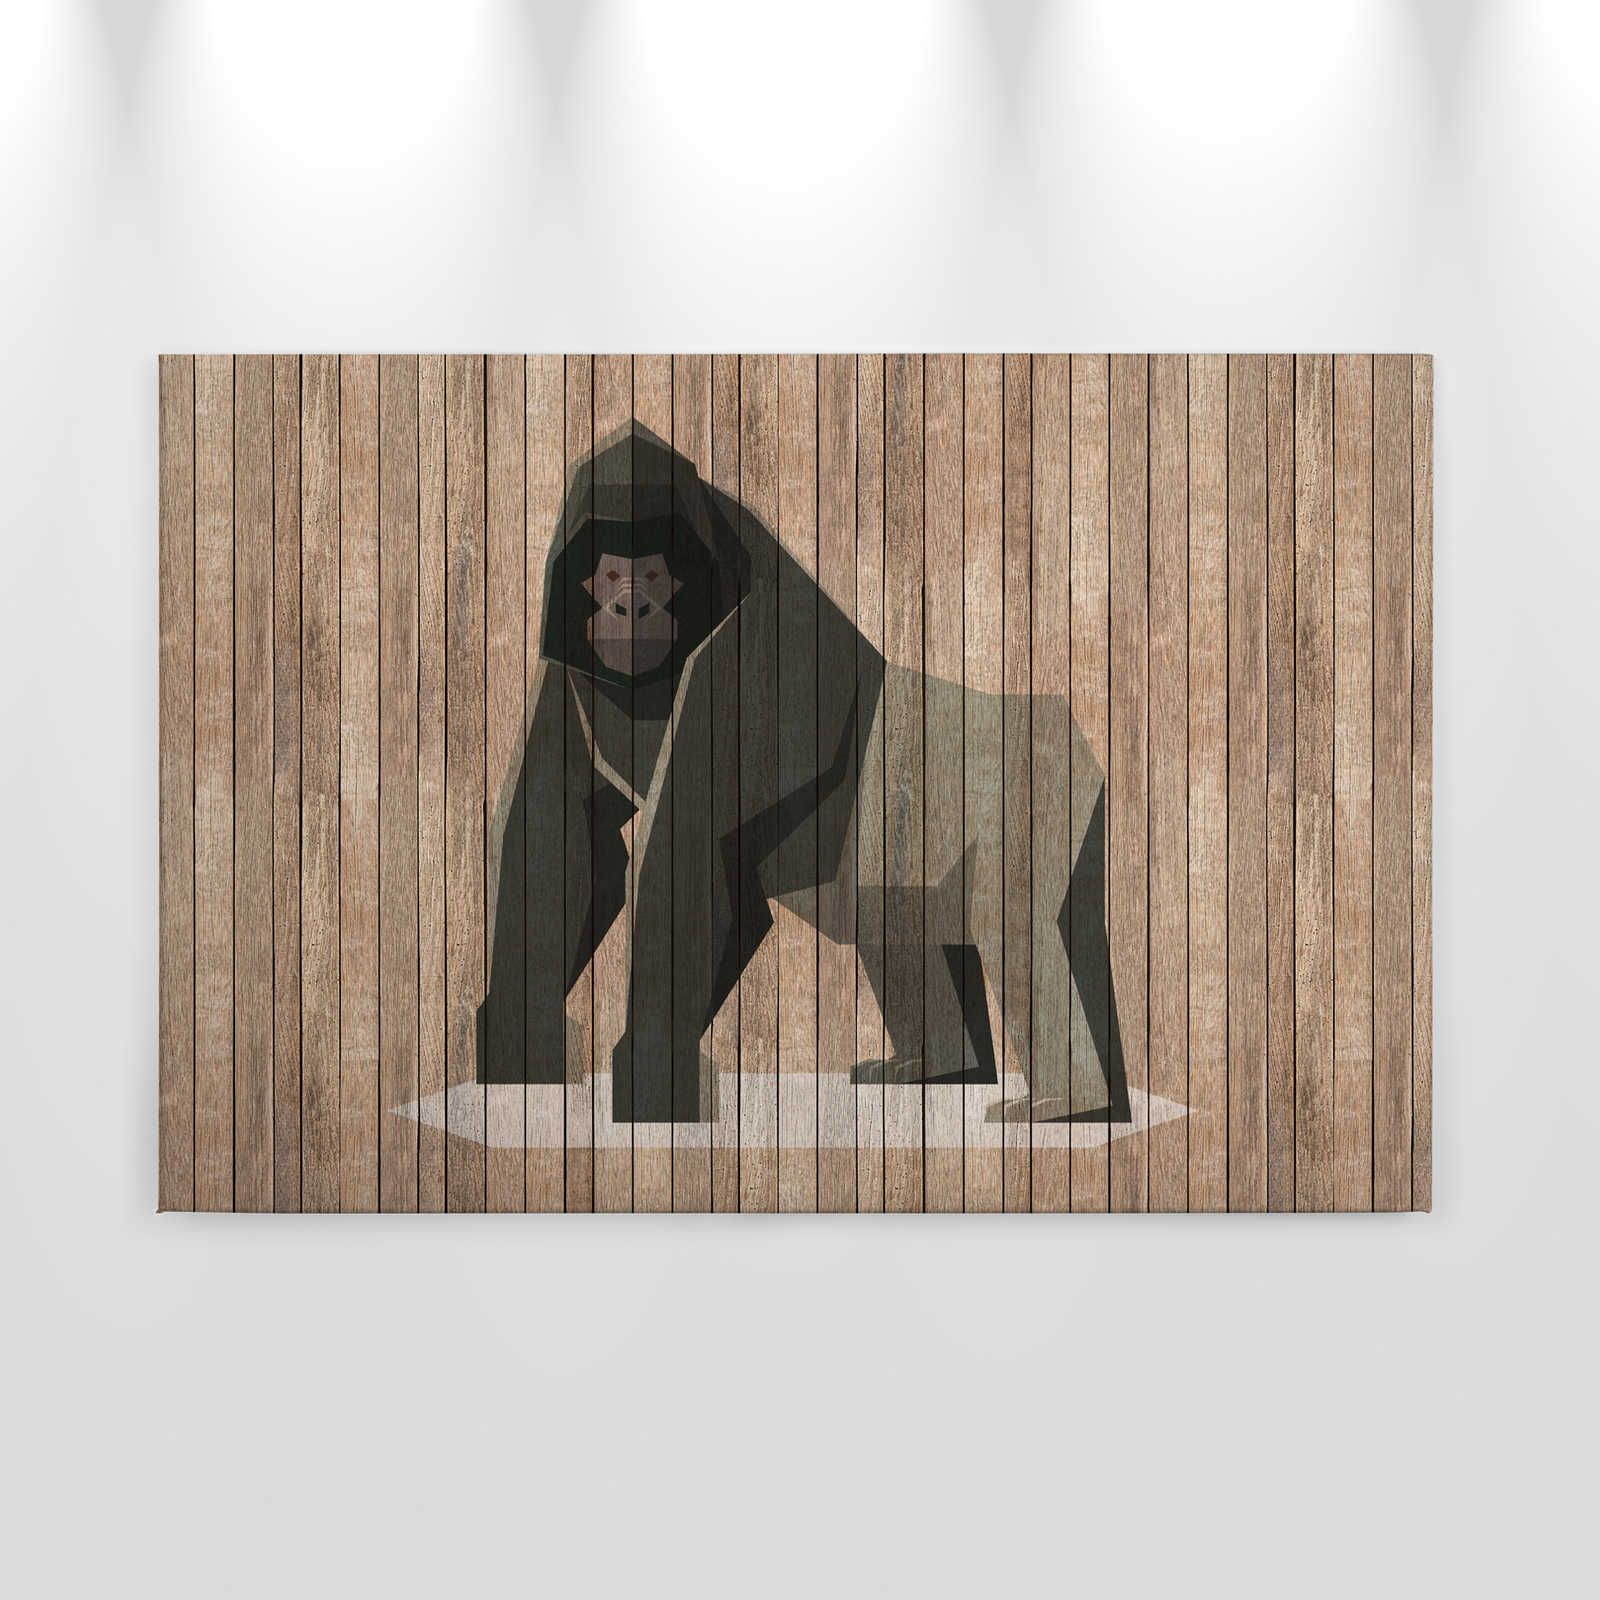             Born to Be Wild 3 - Leinwandbild Gorilla auf Bretterwand - Holzpaneele Breit – 0,90 m x 0,60 m
        